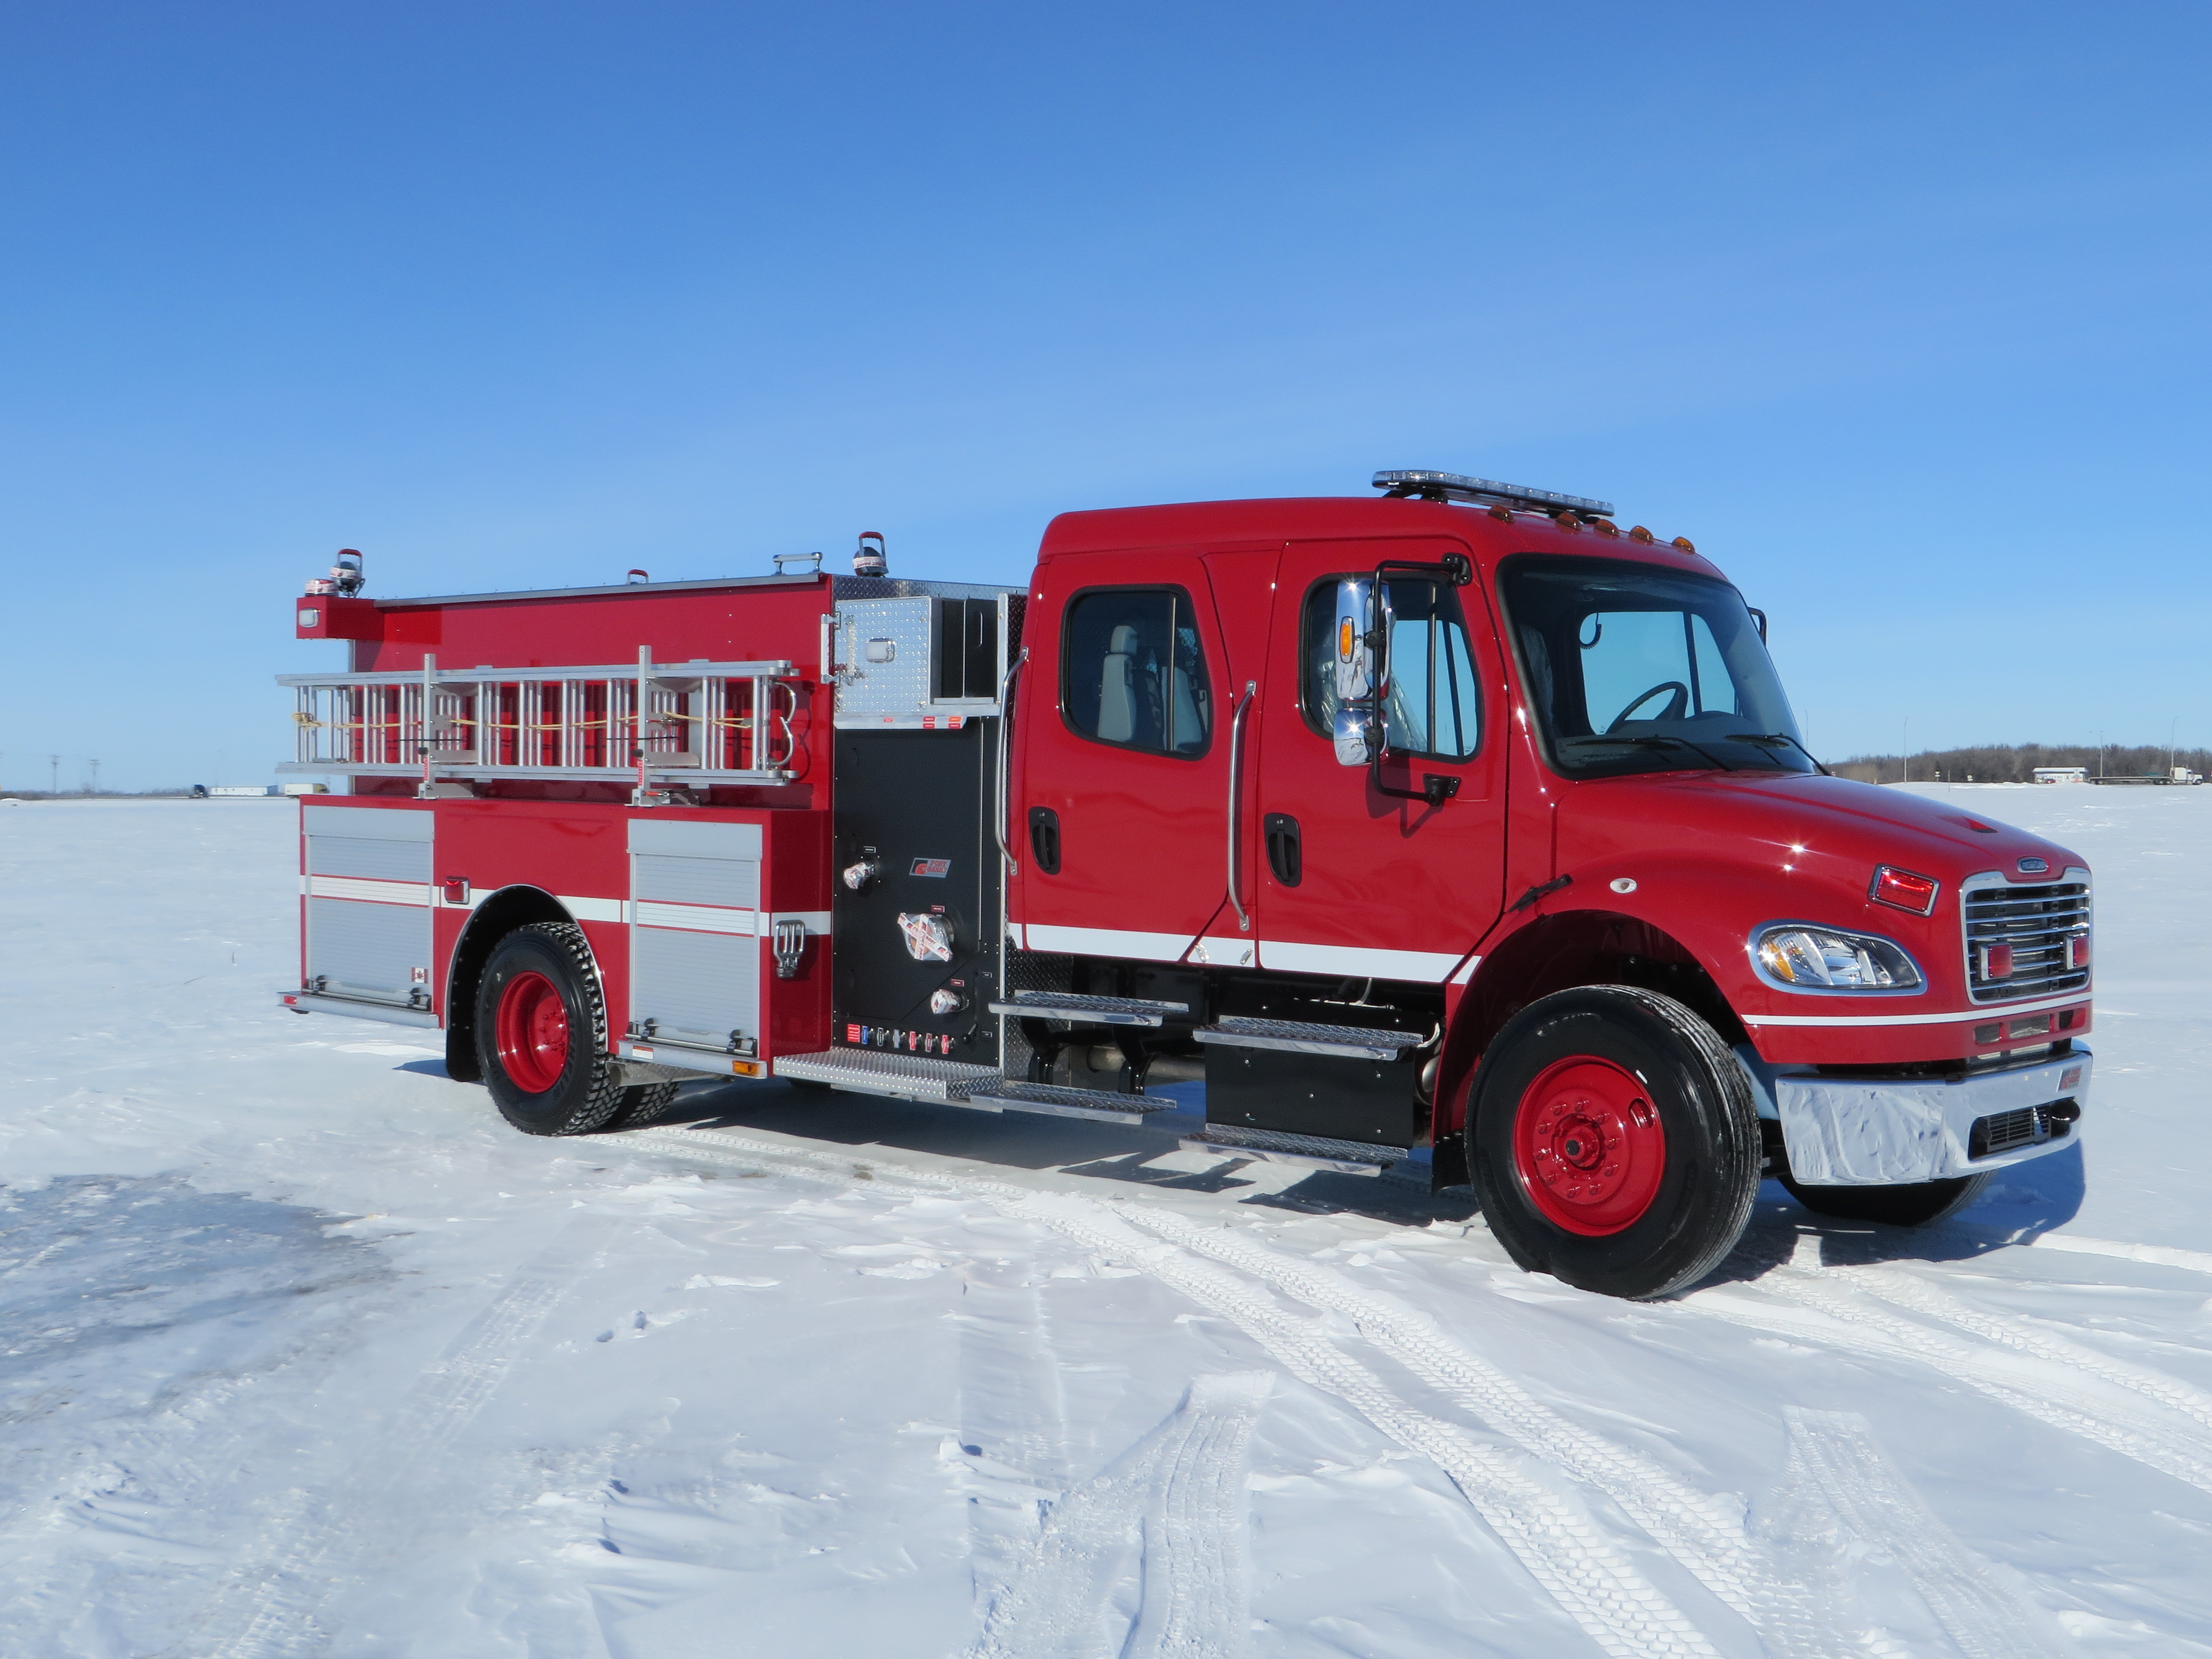 MCSCS / OFMEM - ONTARIO FIRE MARSHAL | Fort Garry Fire Trucks - Fire